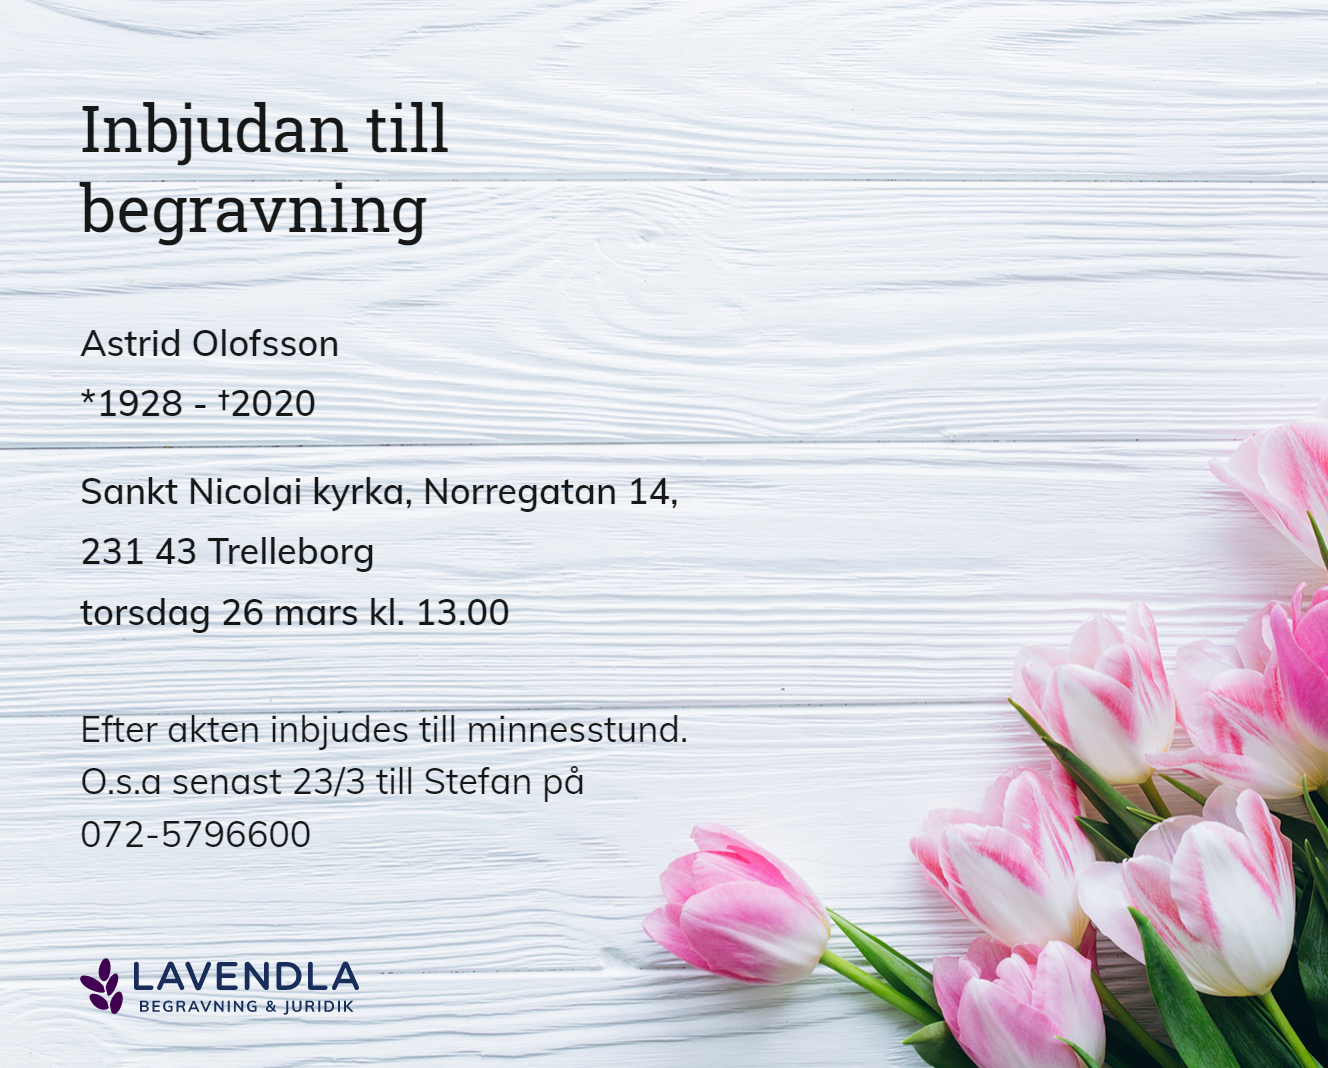 Inbjudningskort till ceremonin för Astrid Olofsson